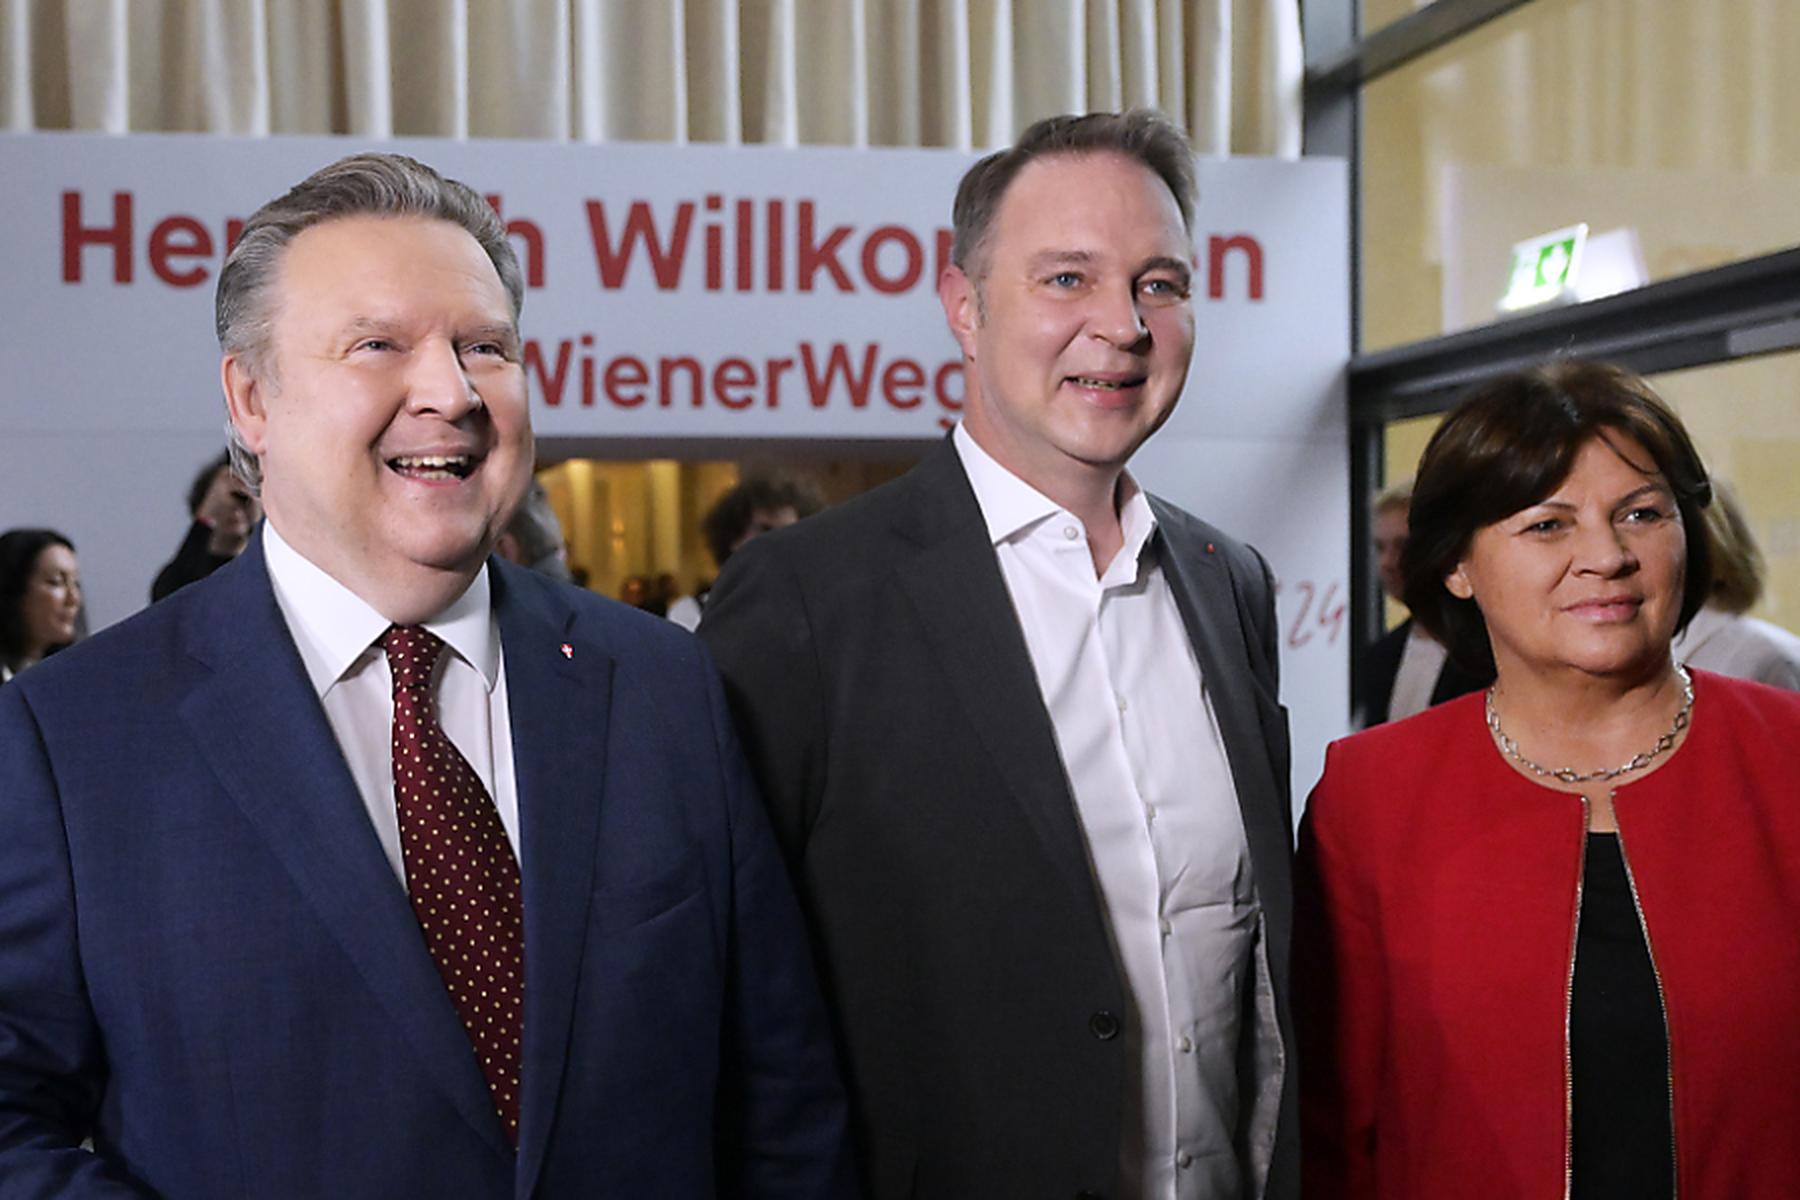 Wien/Frauenkirchen: Klubtagung der Wiener SPÖ im Burgenland gestartet